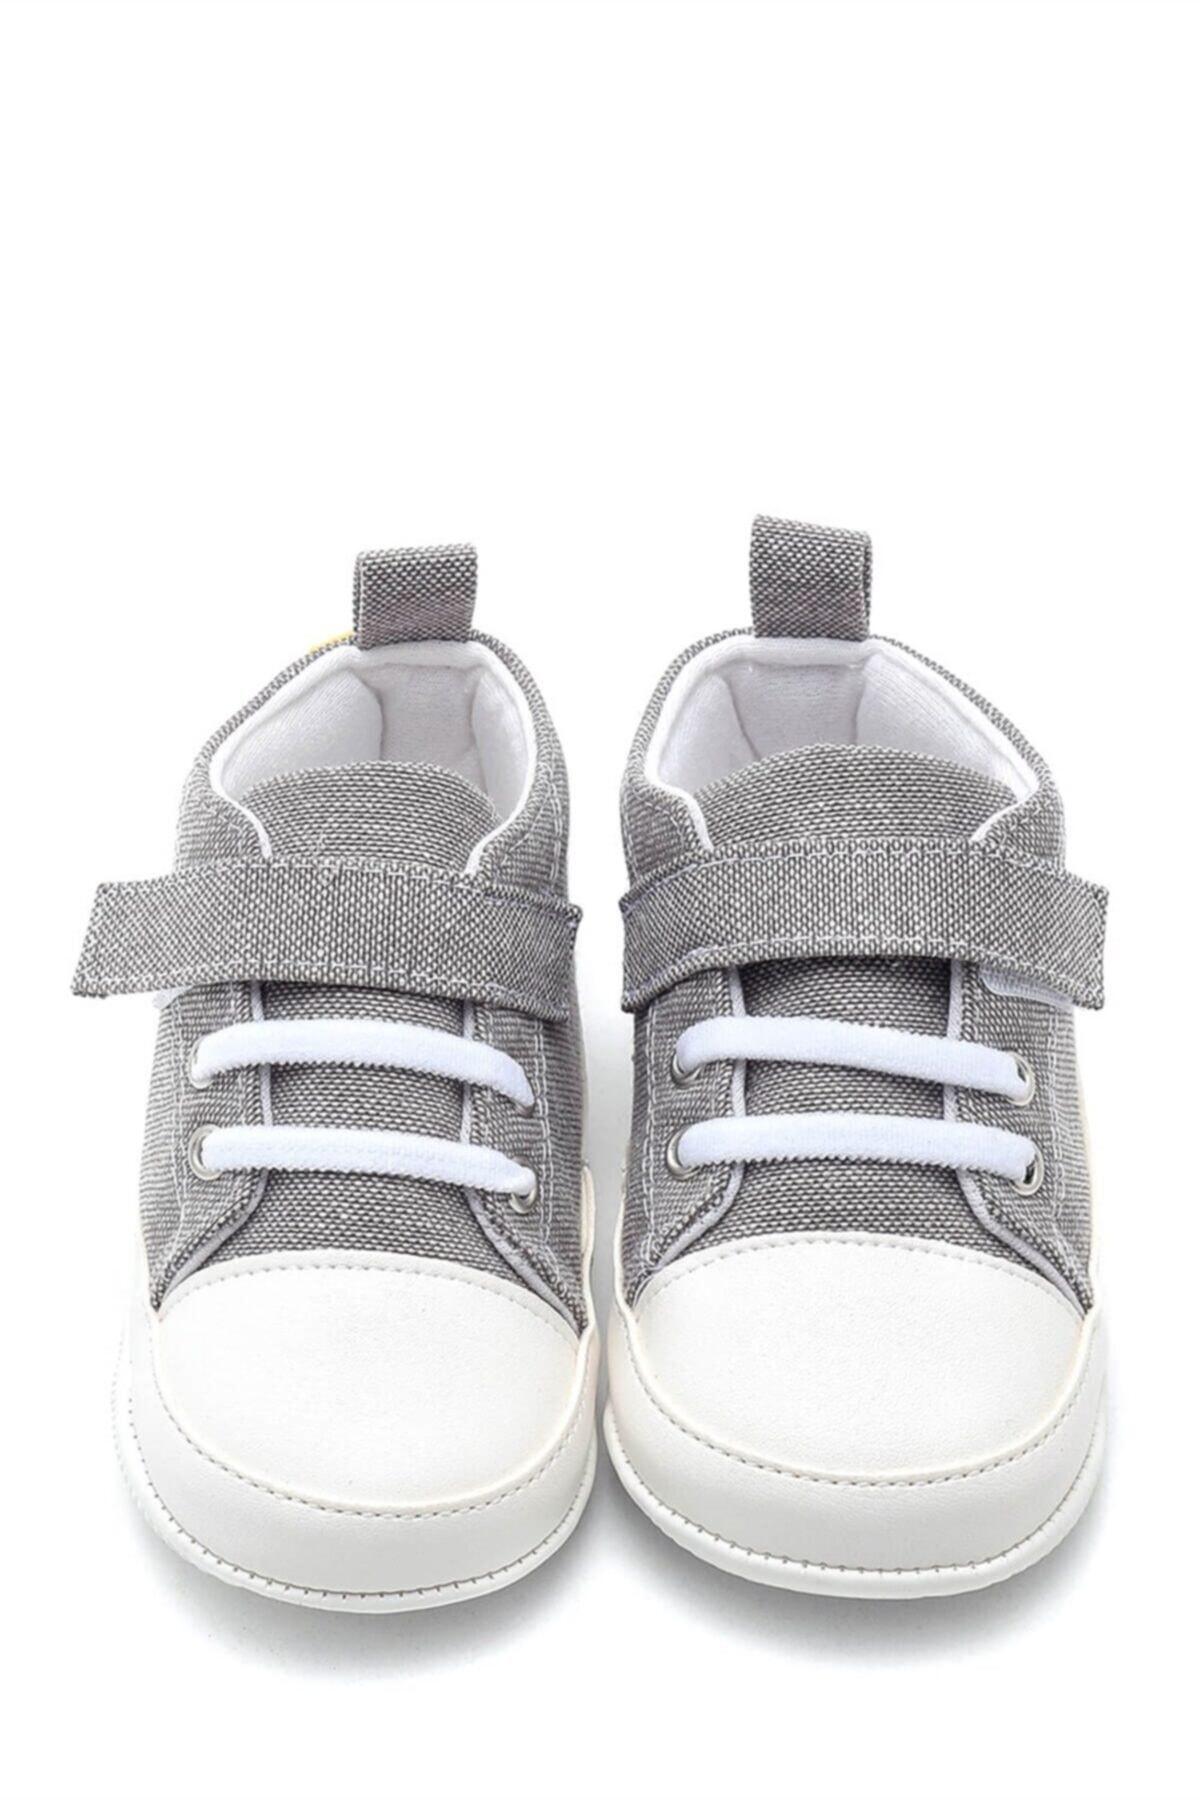 کفش نوزاد طرح دایناسور کد.1037